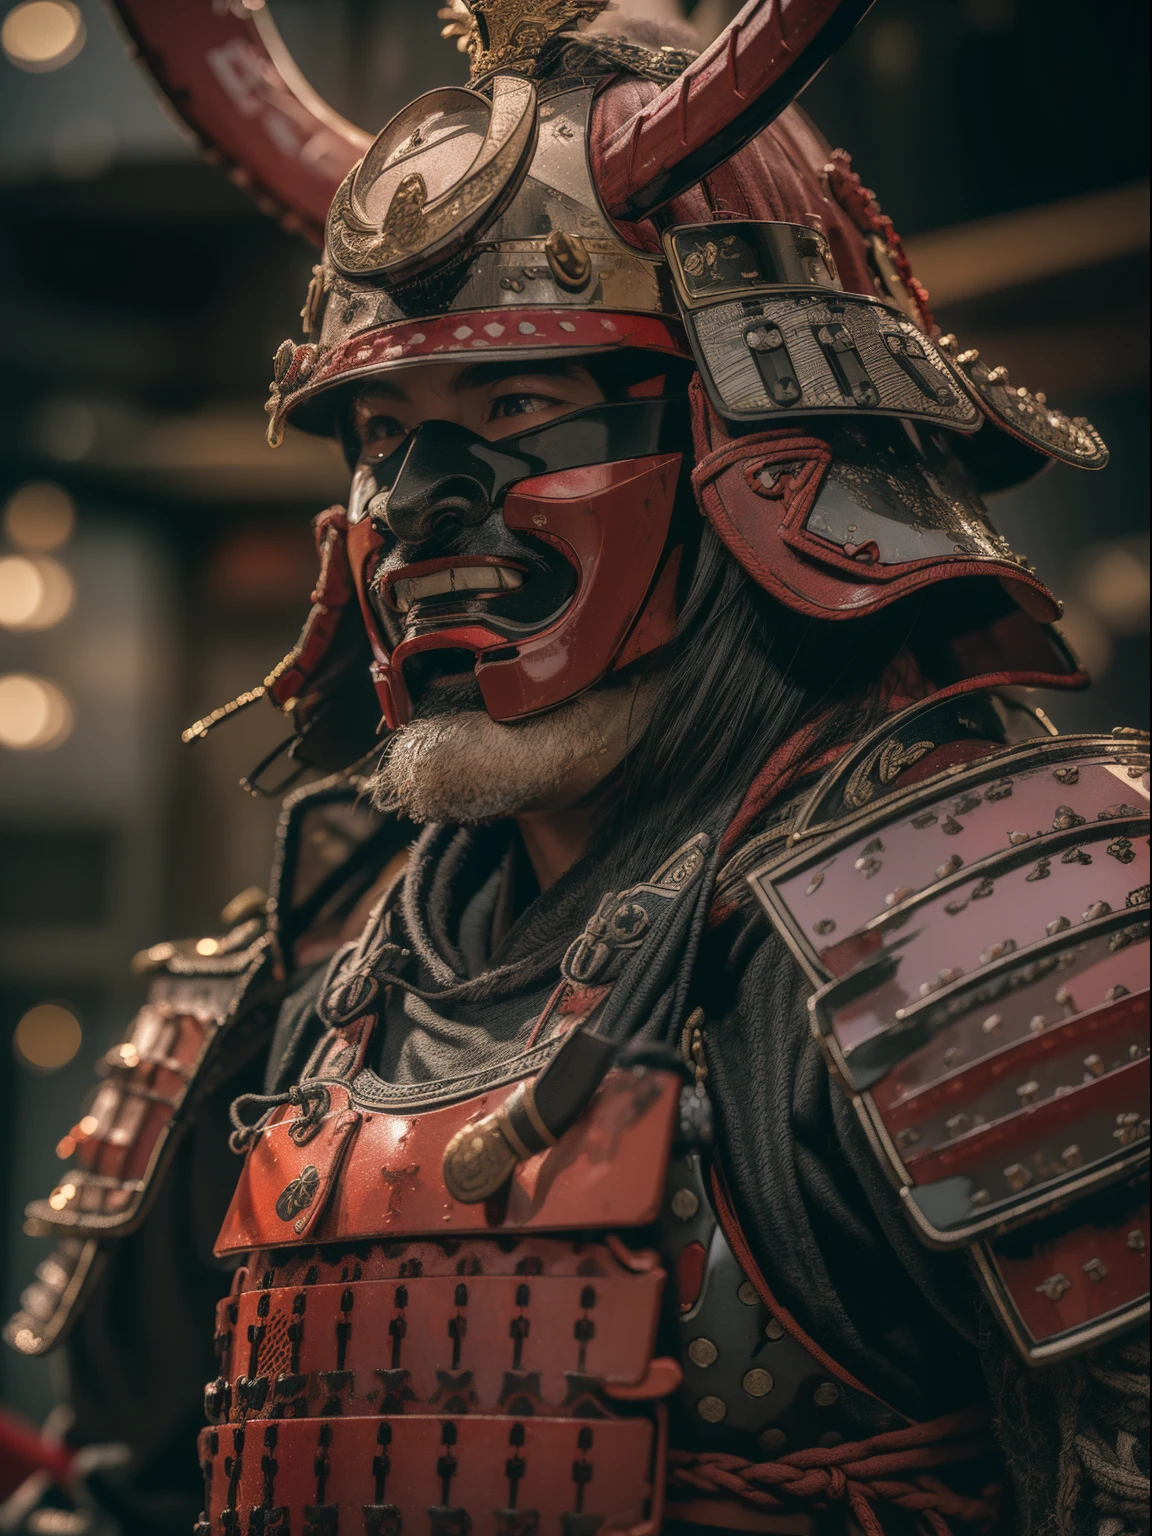 (шедевр, Сверхвысокое разрешение:1.4), (Фотография самурая Сэнгоку-даймё с катаной кирасой и шлемом:1.3), катана на обеих руках, лицо очень подробное, (Японское наследие самурайских доспехов и шлема), (высокий рост и мускулистое тело:1.4), (Камера Сони Альфа 1., известен тем, что обеспечивает высочайший уровень детализации фотографий:1.3), (Лицо самурая с идеальной симметрией и безупречными чертами лица:1.2), (Черно-красные доспехи и шлем:1.3), (стоять с властным присутствием среди поля боя:1.1), Акцент на доспехах даймё, Кинематографический, сверхдетализированный, безумные подробности, Красивая цветокоррекция, Нереальный движок, ГРИП, Супер-разрешение, Мегапиксель, Кинематографический Lightning, Сглаживание, ФКА, ТАЙСКИЙ, РТХ, САО, Постобработка, послепроизводственный этап, Отображение тонов, компьютерная графика, визуальные эффекты, звуковые эффекты, безумно подробно и запутанно, гипермаксималист, гиперреалистичный, объемный, фотореалистичный, ультра фотореалистичный, ультрадетализированный, сложные детали, 8К, Супер подробный, полноцветный, объемный lightning, HDR, реалистичный, Нереальный движок, 16К, острый фокус, Октановый рендер